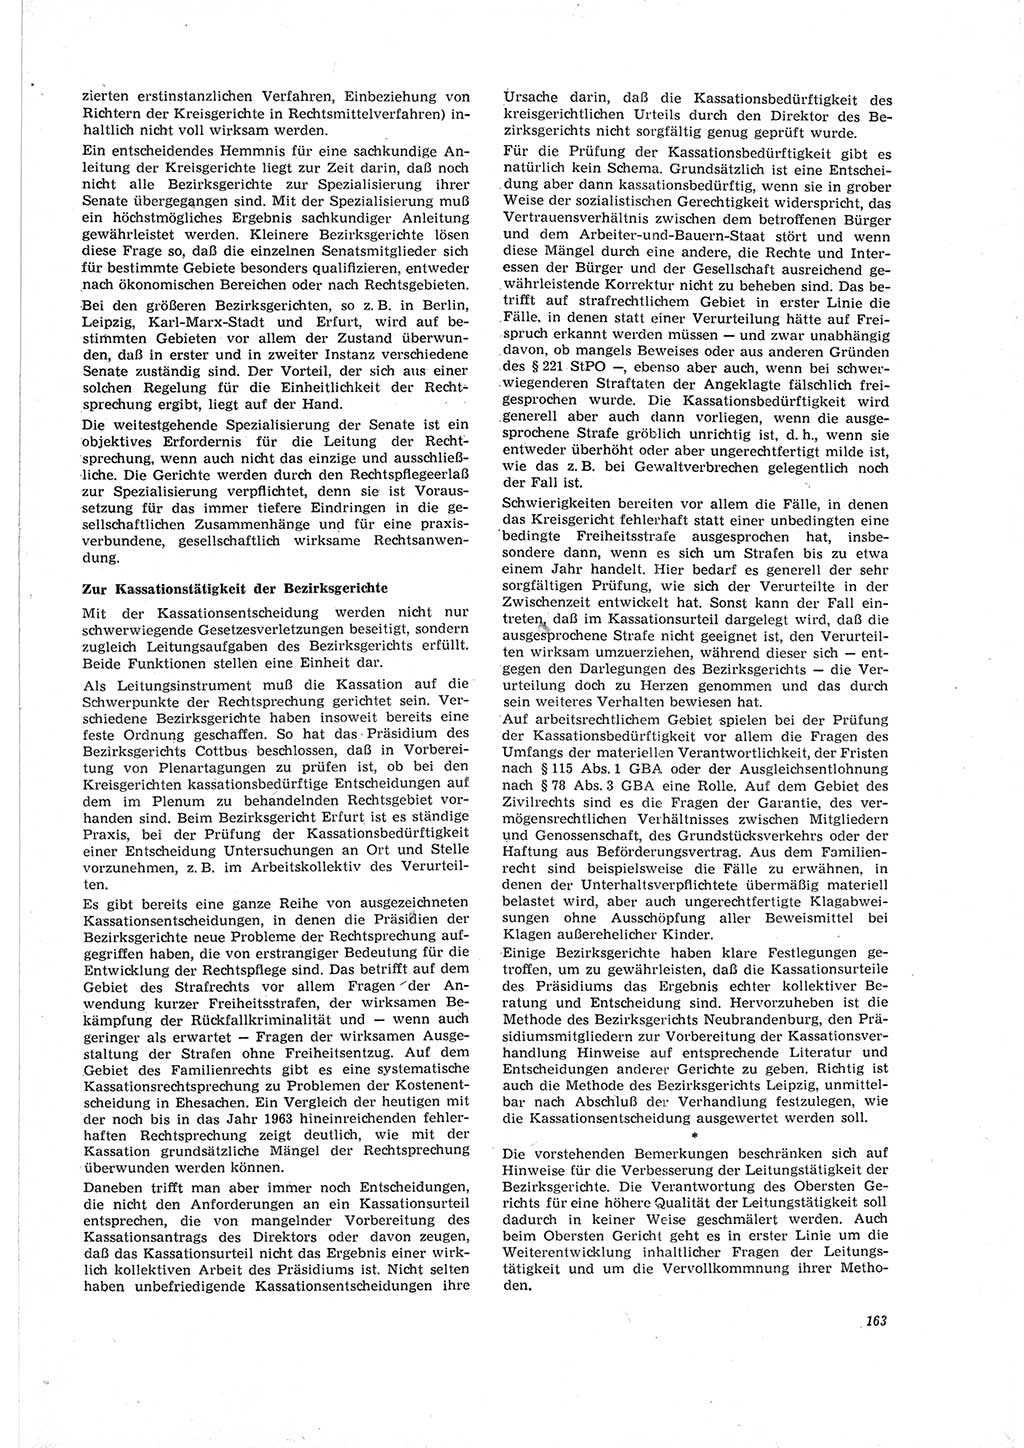 Neue Justiz (NJ), Zeitschrift für Recht und Rechtswissenschaft [Deutsche Demokratische Republik (DDR)], 19. Jahrgang 1965, Seite 163 (NJ DDR 1965, S. 163)